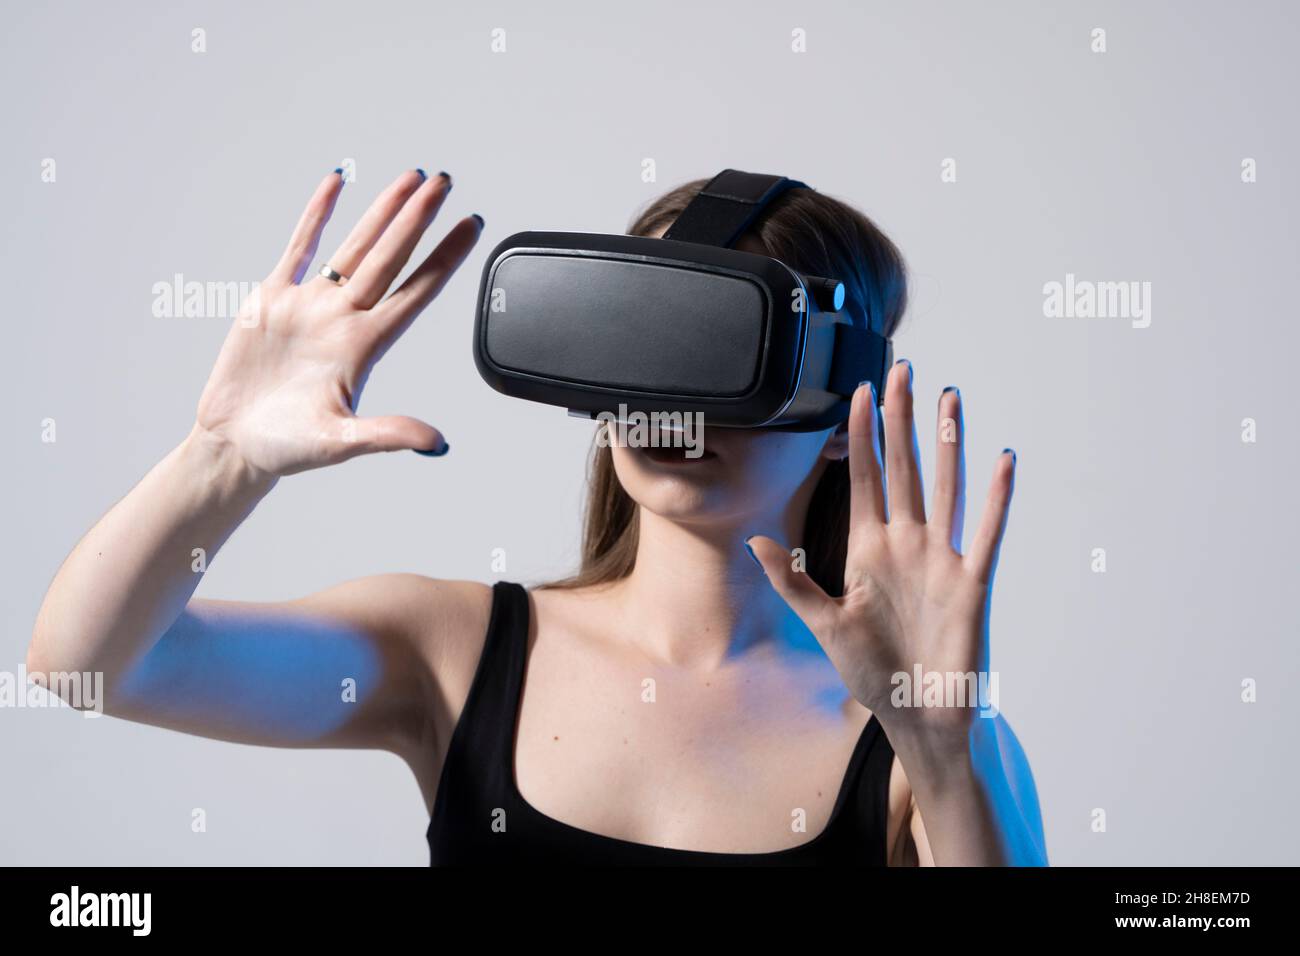 Architecte moderne, designer femme portant des lunettes VR et interagit avec métaverse à l'aide de gestes de glissement et d'étirement.Concept technologique futur. Banque D'Images